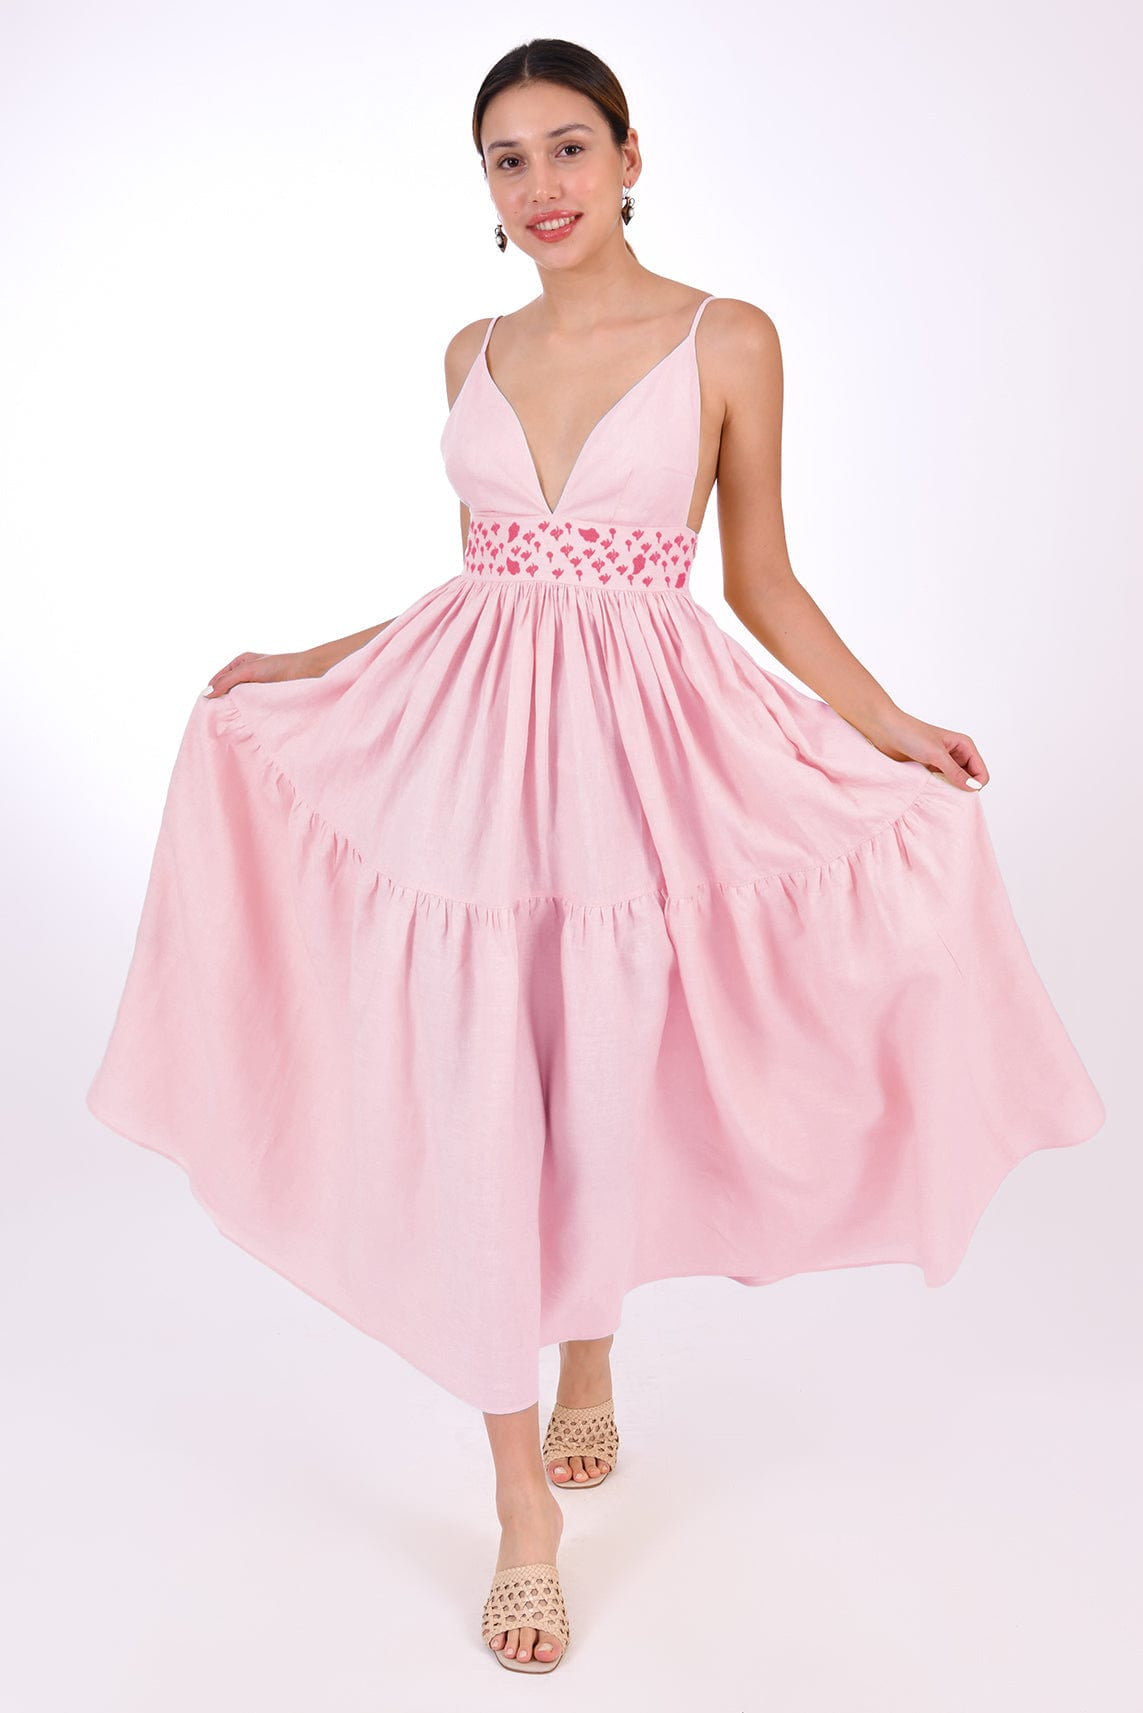 Fanm Mon Dress XXS / Light Pink Ruzgar Marassa